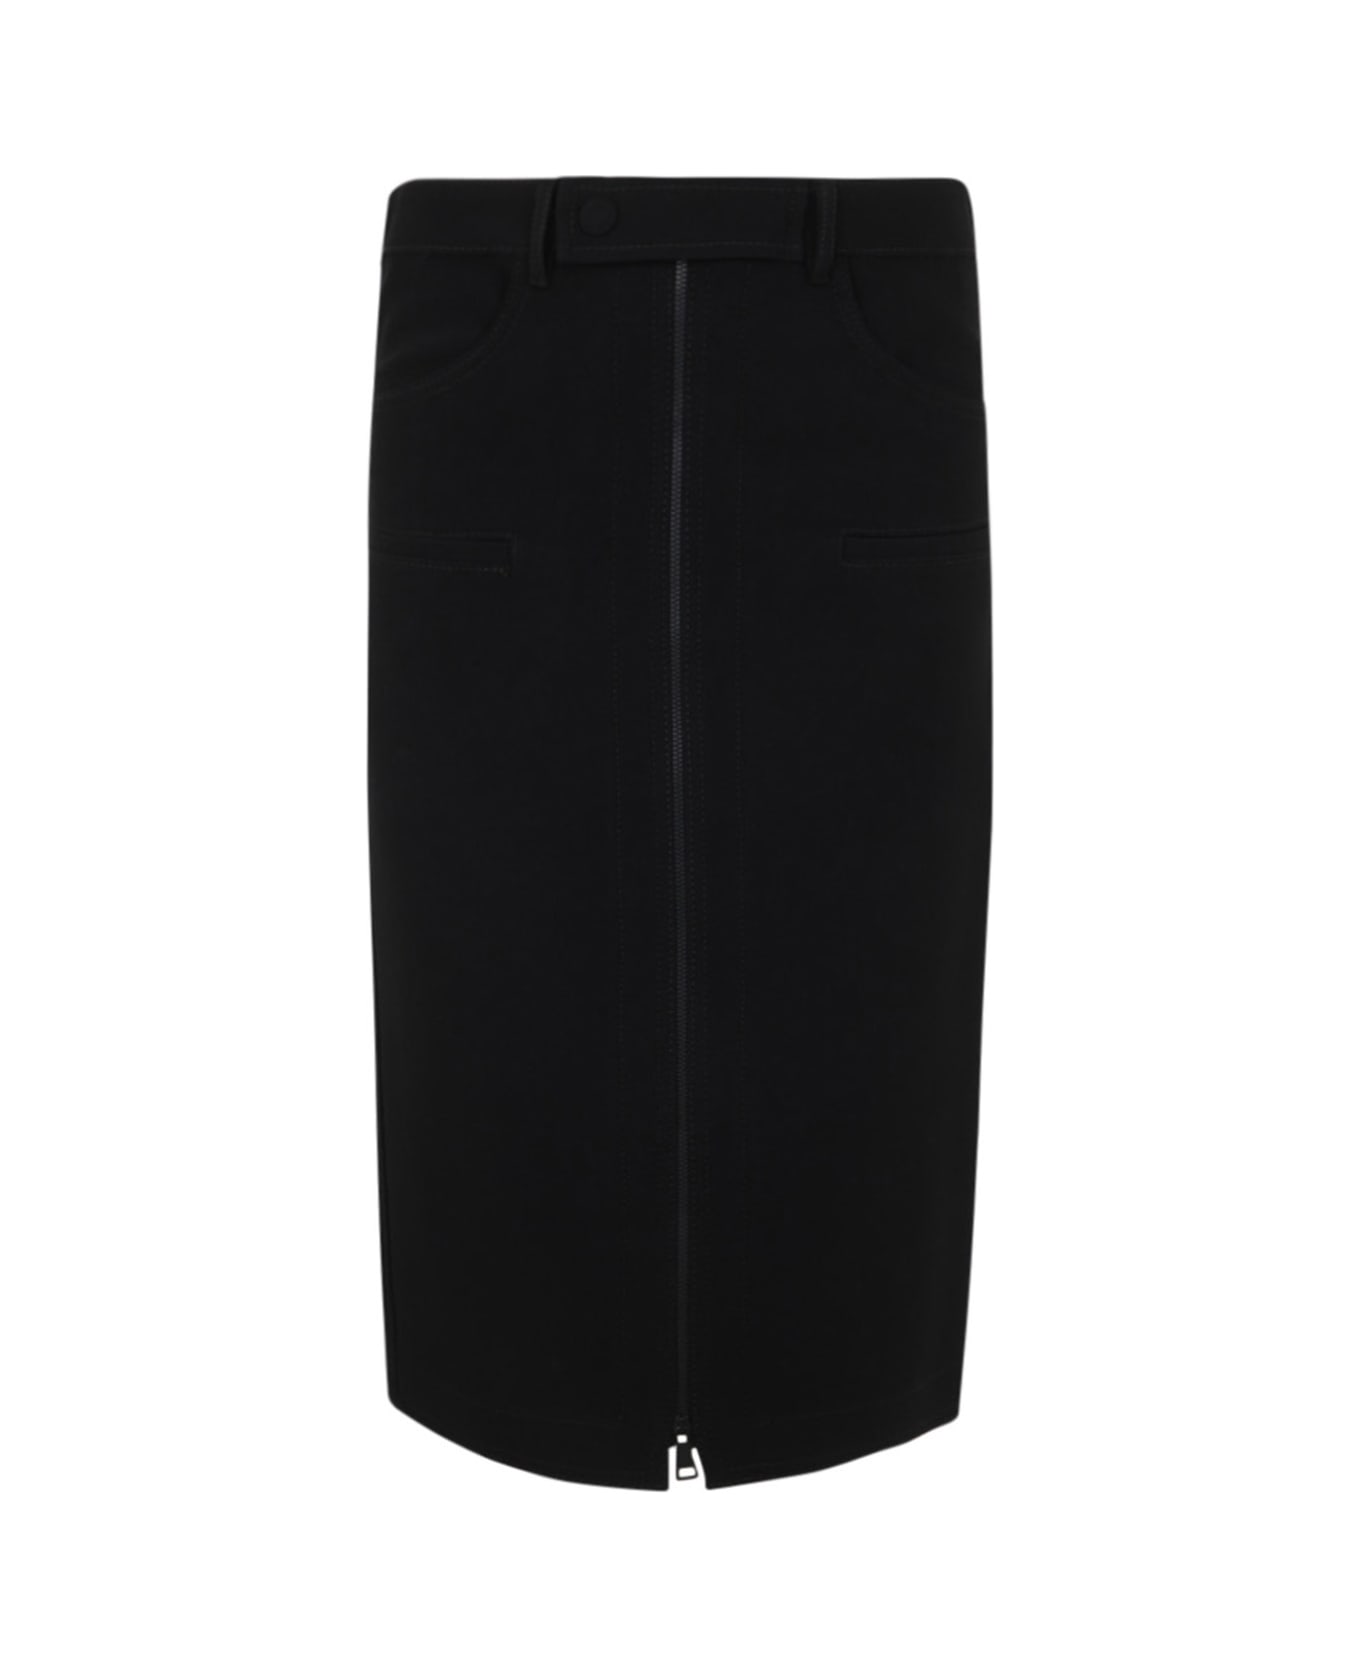 N.21 Longuette Pencil Skirt - Black